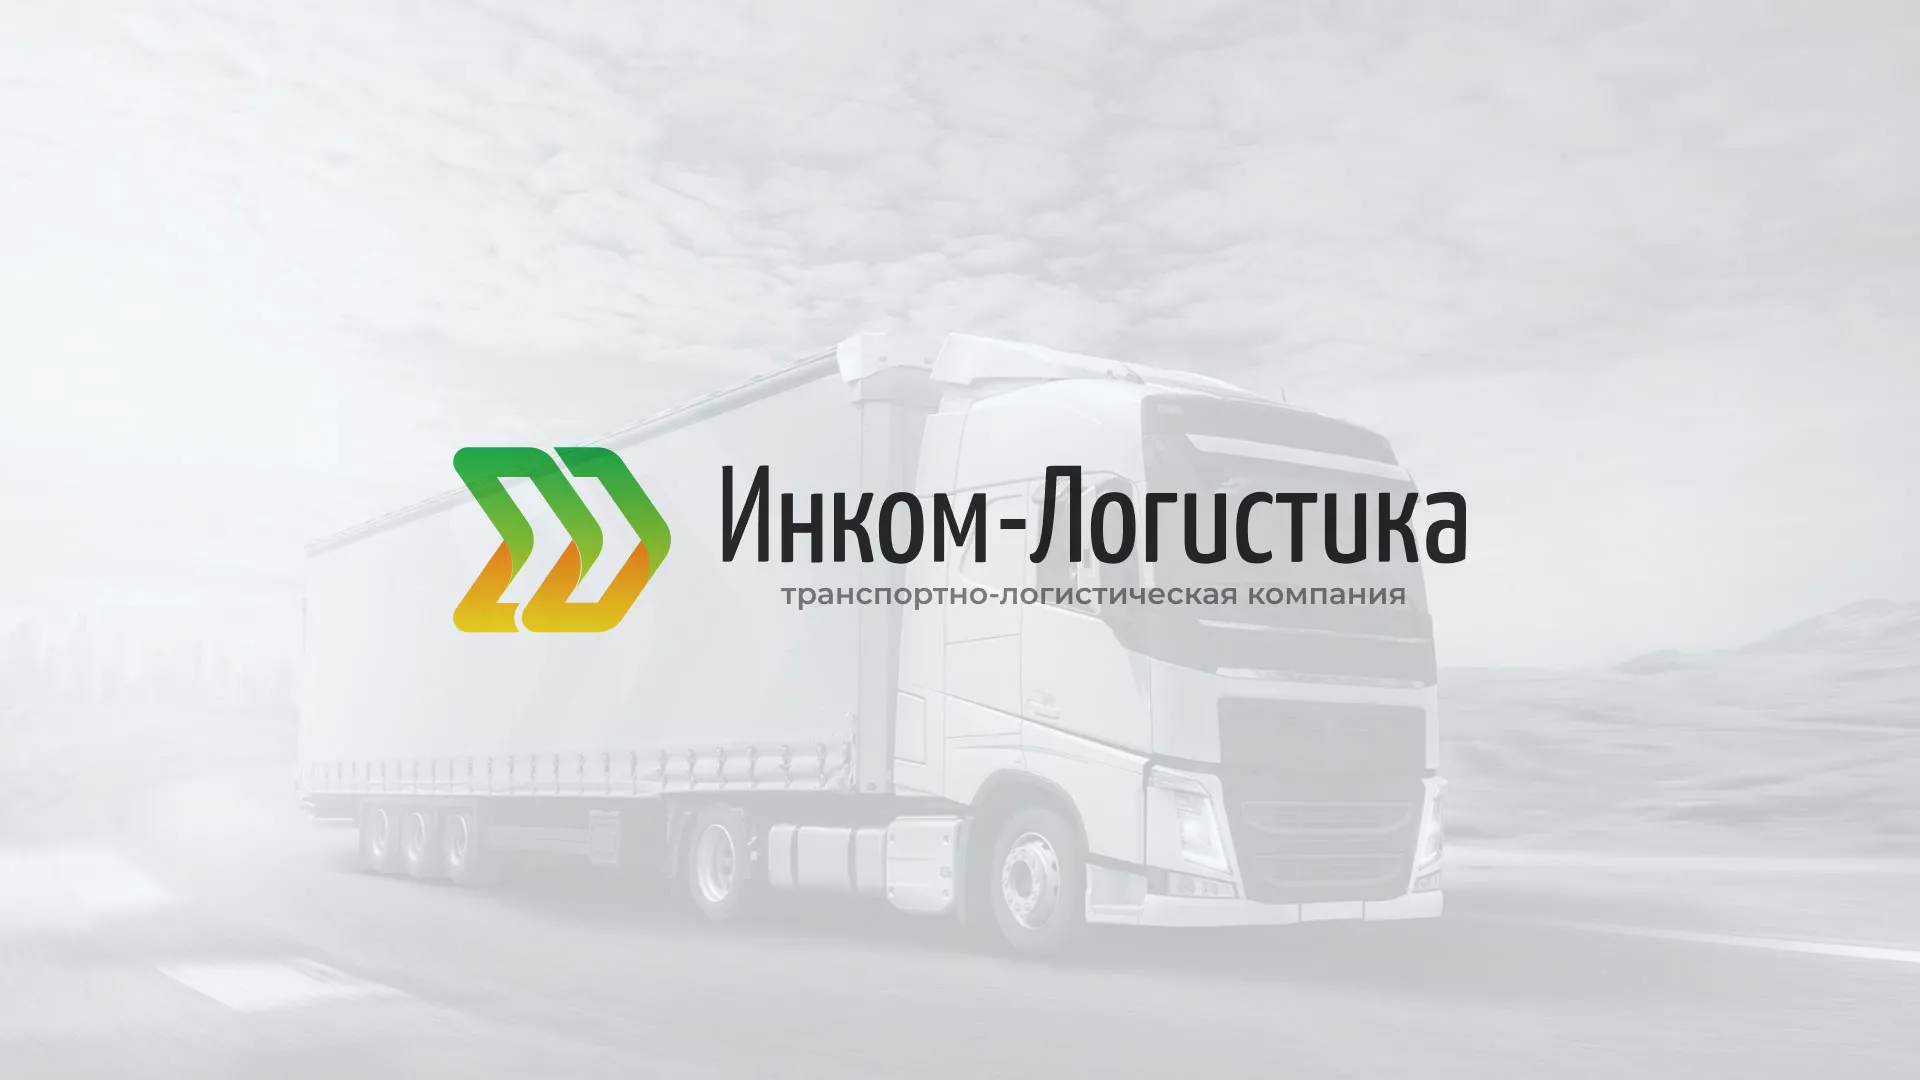 Разработка логотипа и сайта компании «Инком-Логистика» в Лосино-Петровске